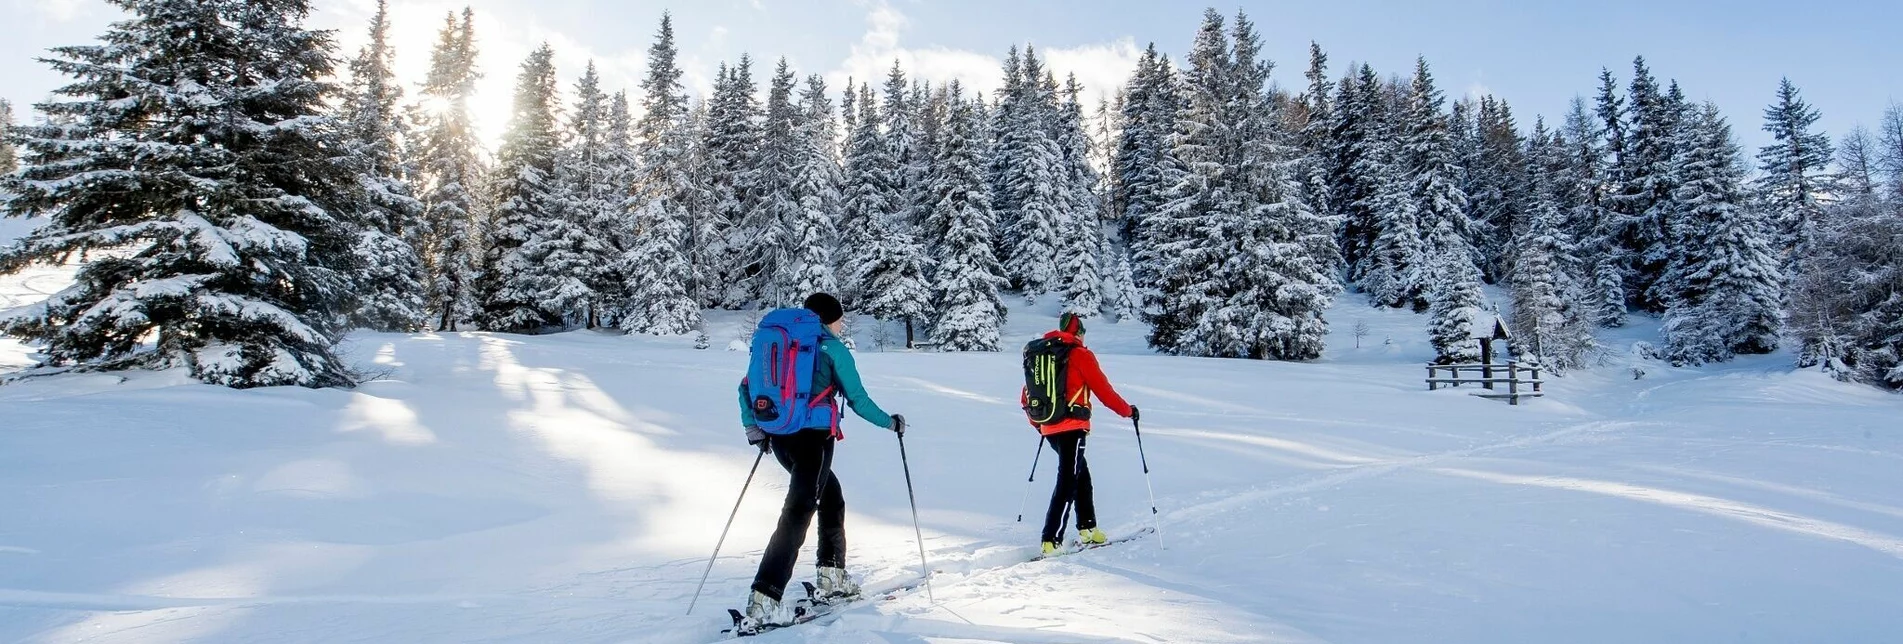 Skitour Frauenalpe über den Grat - Touren-Impression #1 | © Tourismusverband Region Murau